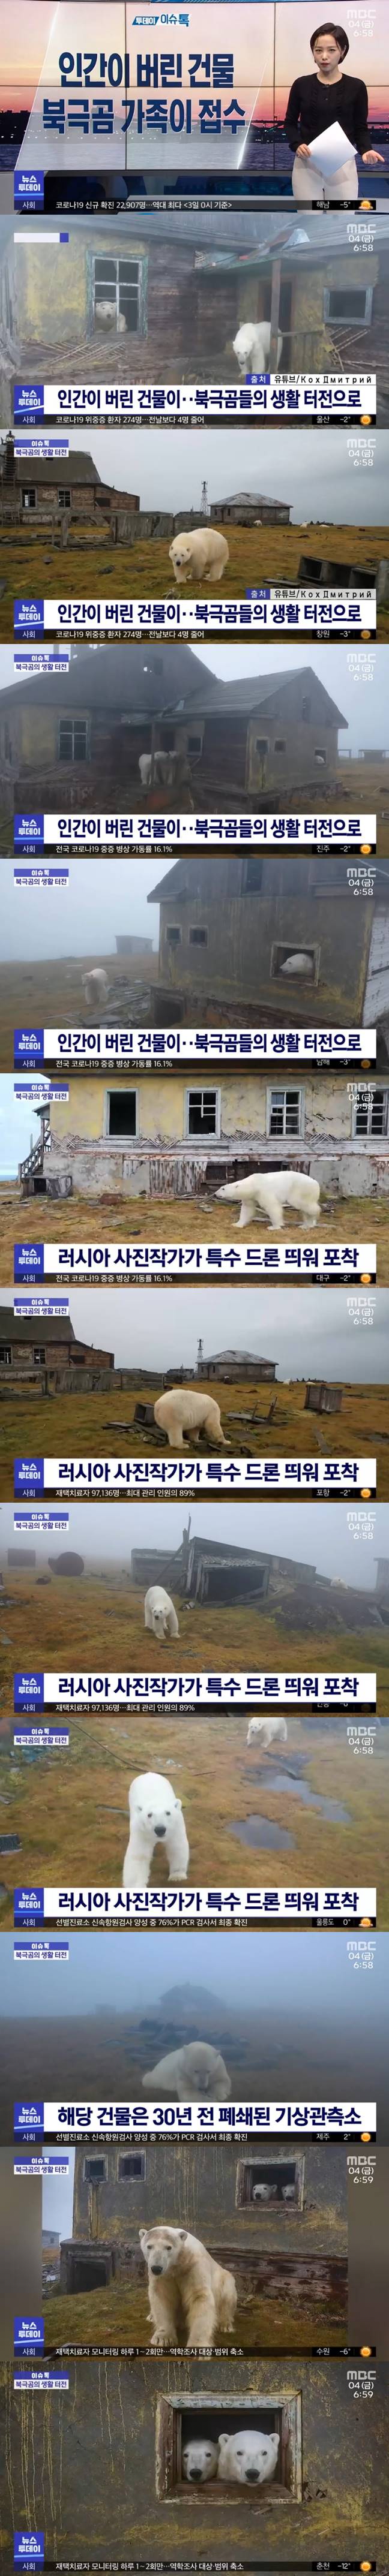 15 인간이 버린 건물에 입주한 북극곰 가족.jpg